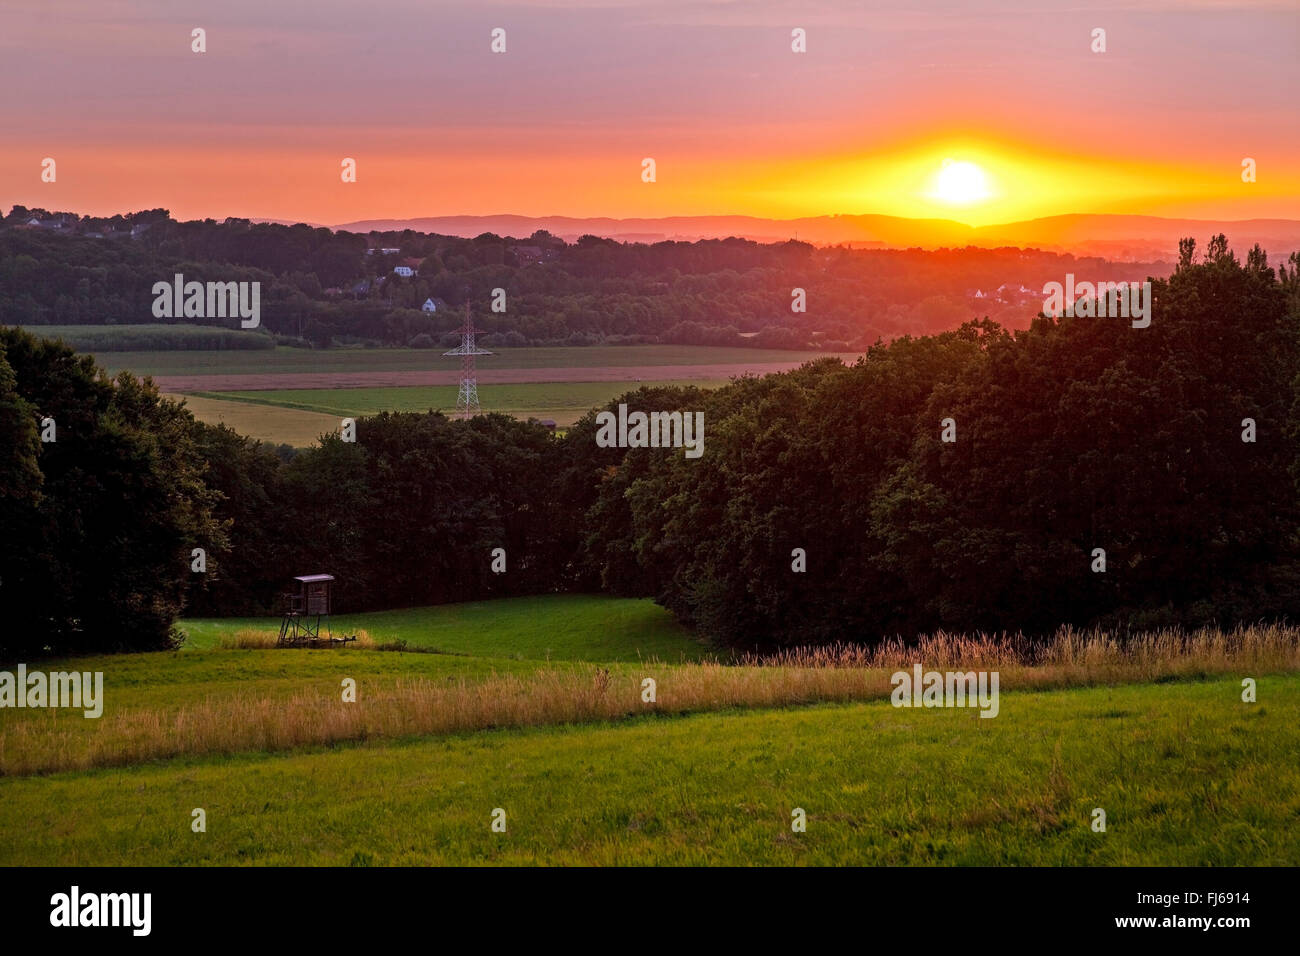 Suggestivo tramonto in un paesaggio collinare nei pressi di Herford al Weserbergland, in Germania, in Renania settentrionale-Vestfalia, East Westfalia, Herford Foto Stock